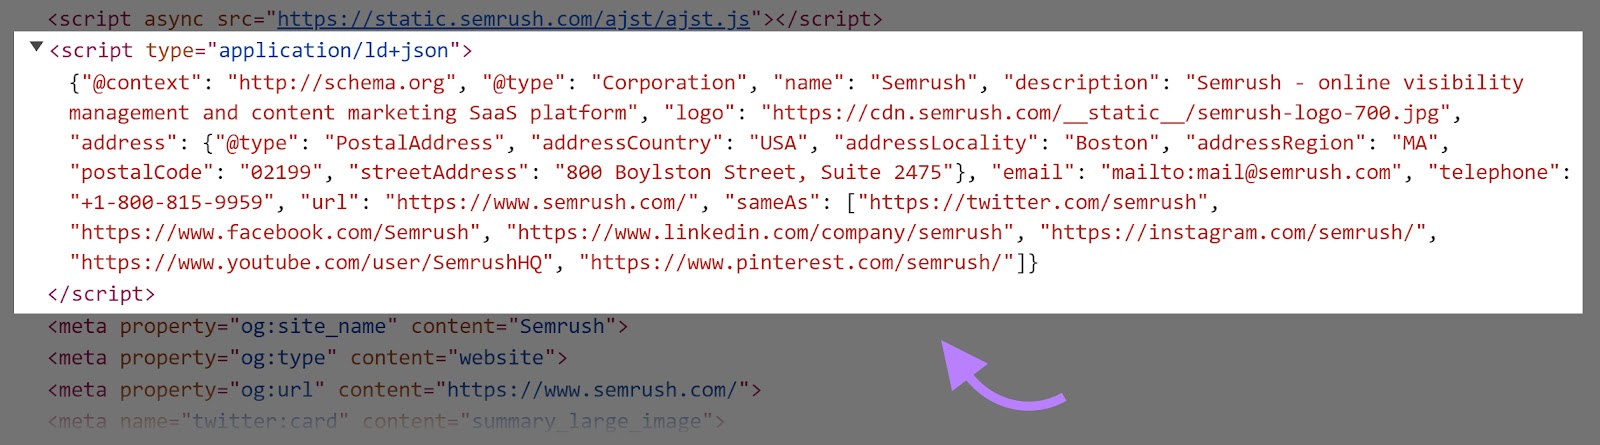 Schema markup HTML script code of the Semrush homepage.